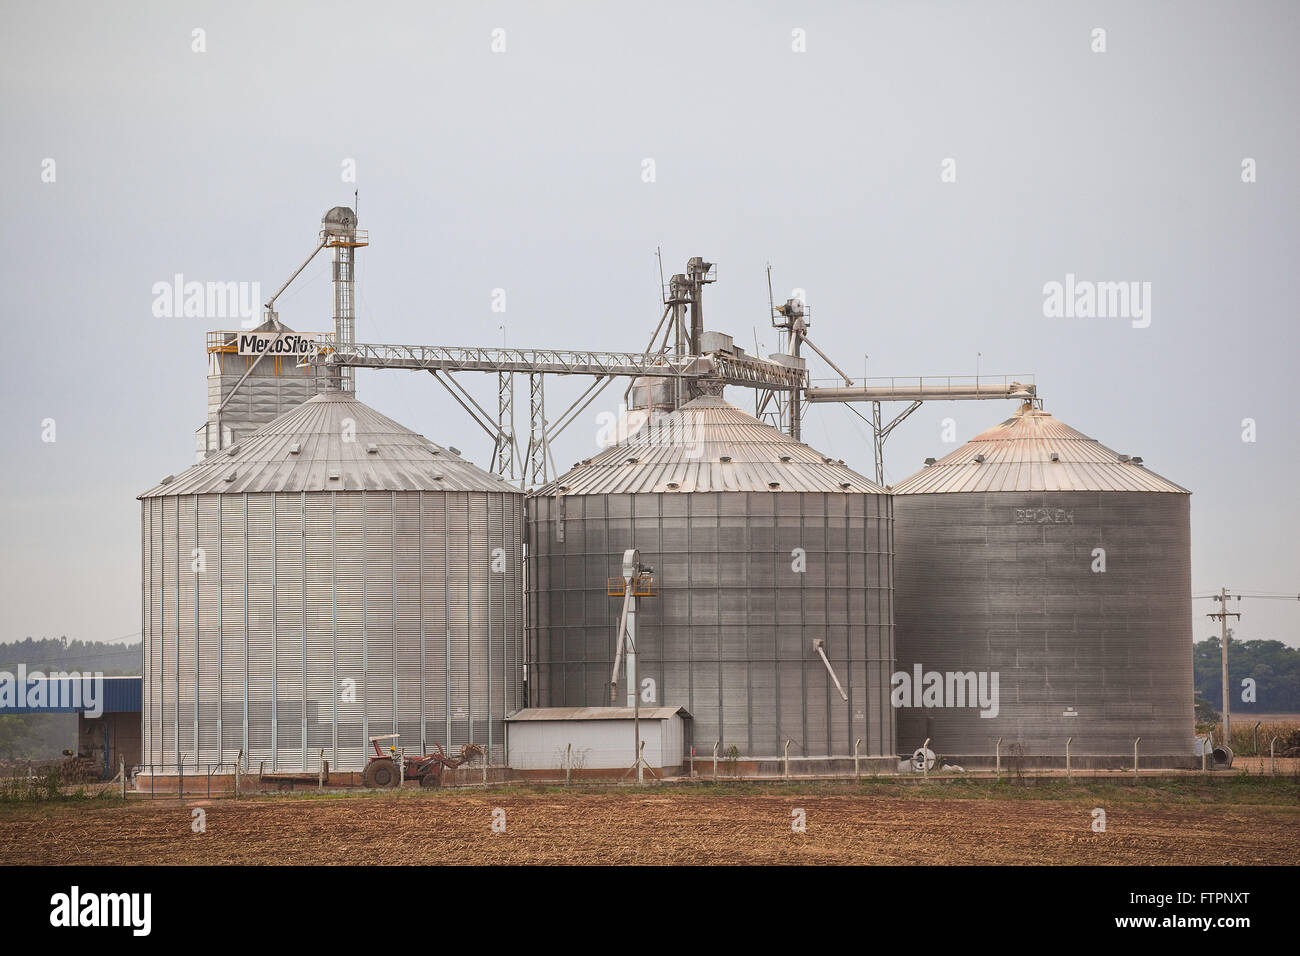 Les silos de stockage de céréales au bord de la PR-471 l'autoroute à la campagne Banque D'Images